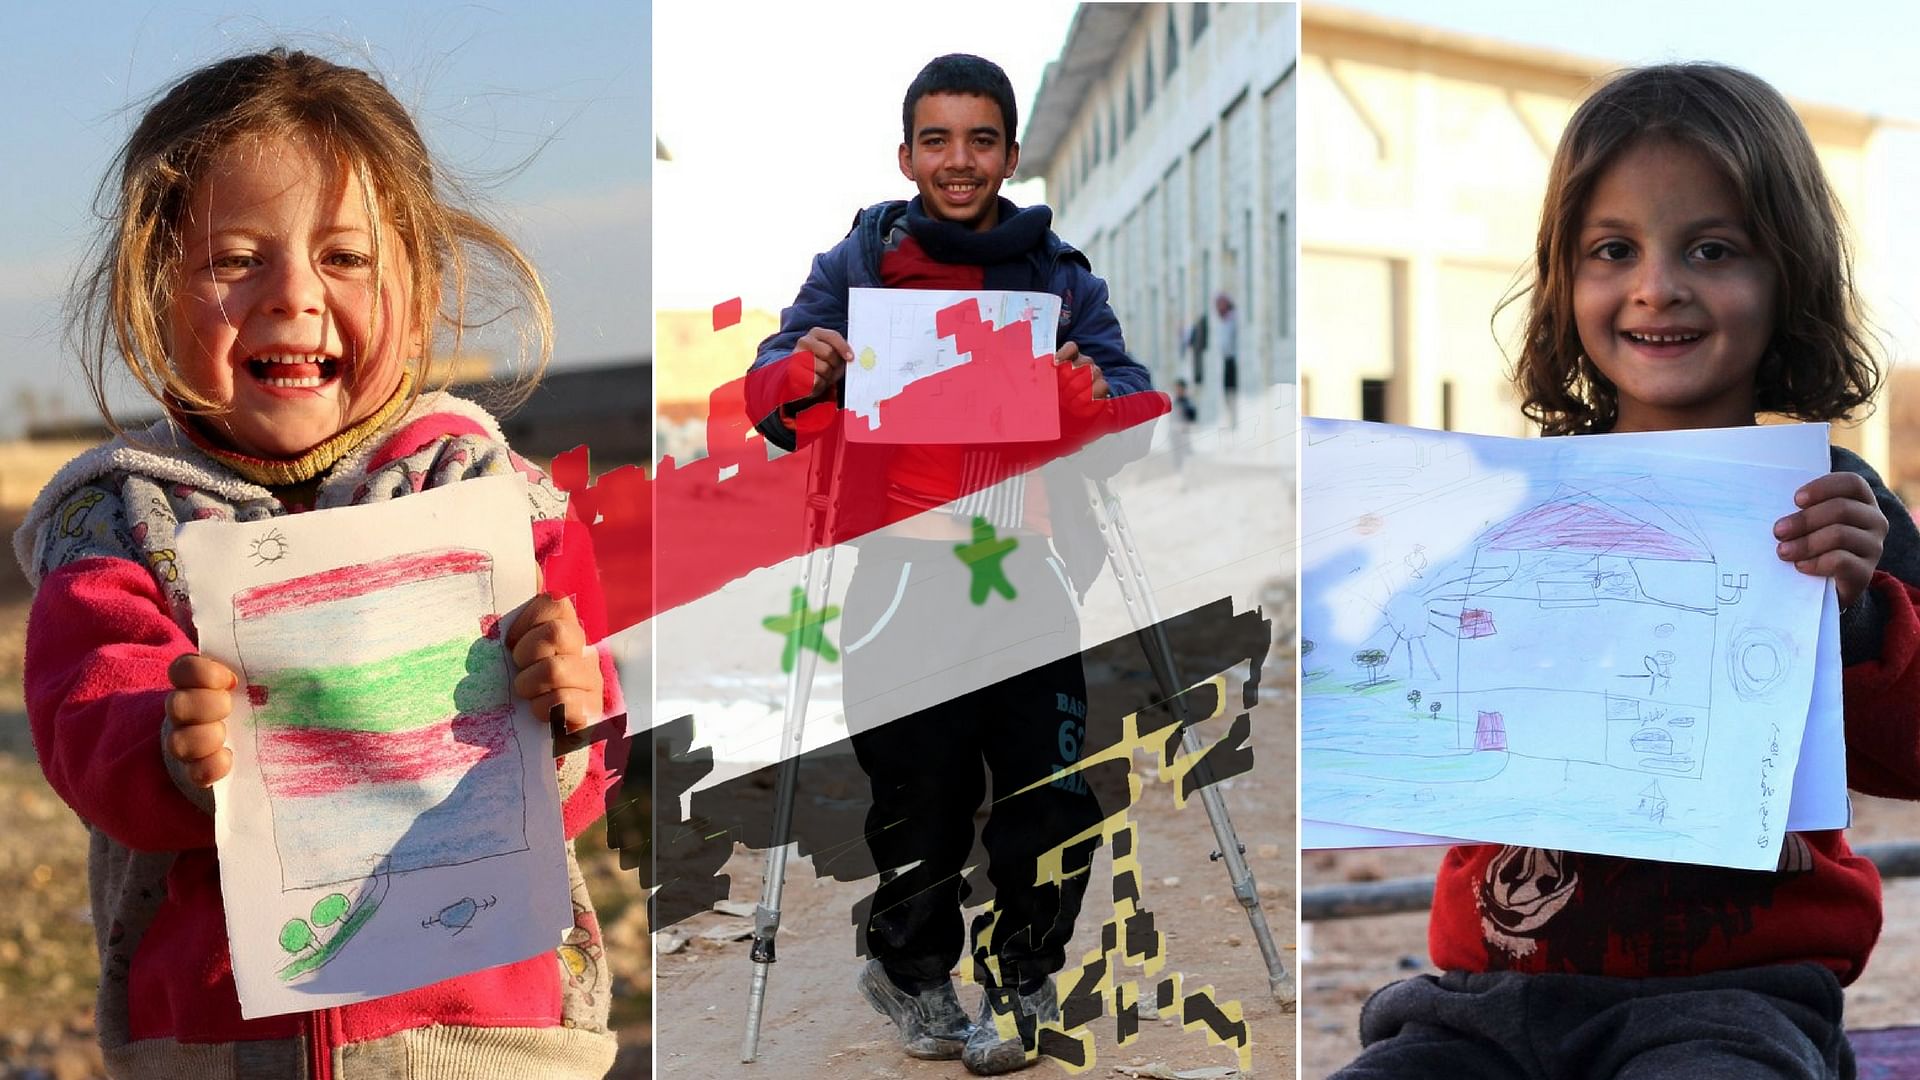 UNICEF ने सीरिया की बदहाली के बीच इन बच्चों के मन की बात जानने के लिए उनसे  ड्रॉइंग करवाई (फोटो: ट्विटर/<a href="https://twitter.com/UNICEF/status/851537801011134467">@UNICEF</a>)